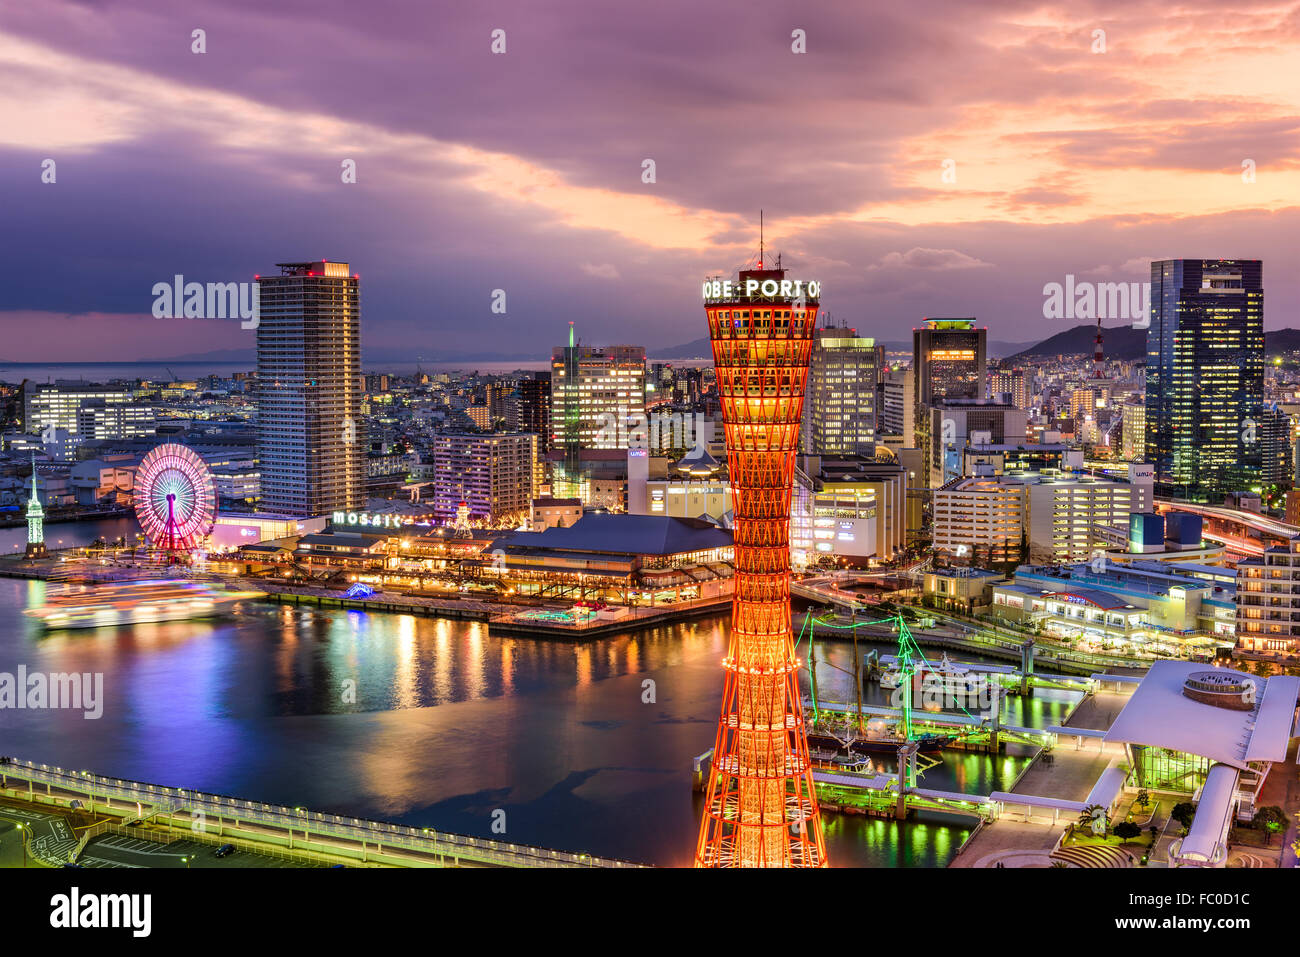 KOBE, JAPON - 16 décembre 2015 : Le port de Kobe, au Japon avec le Landmark Tower au crépuscule. Banque D'Images